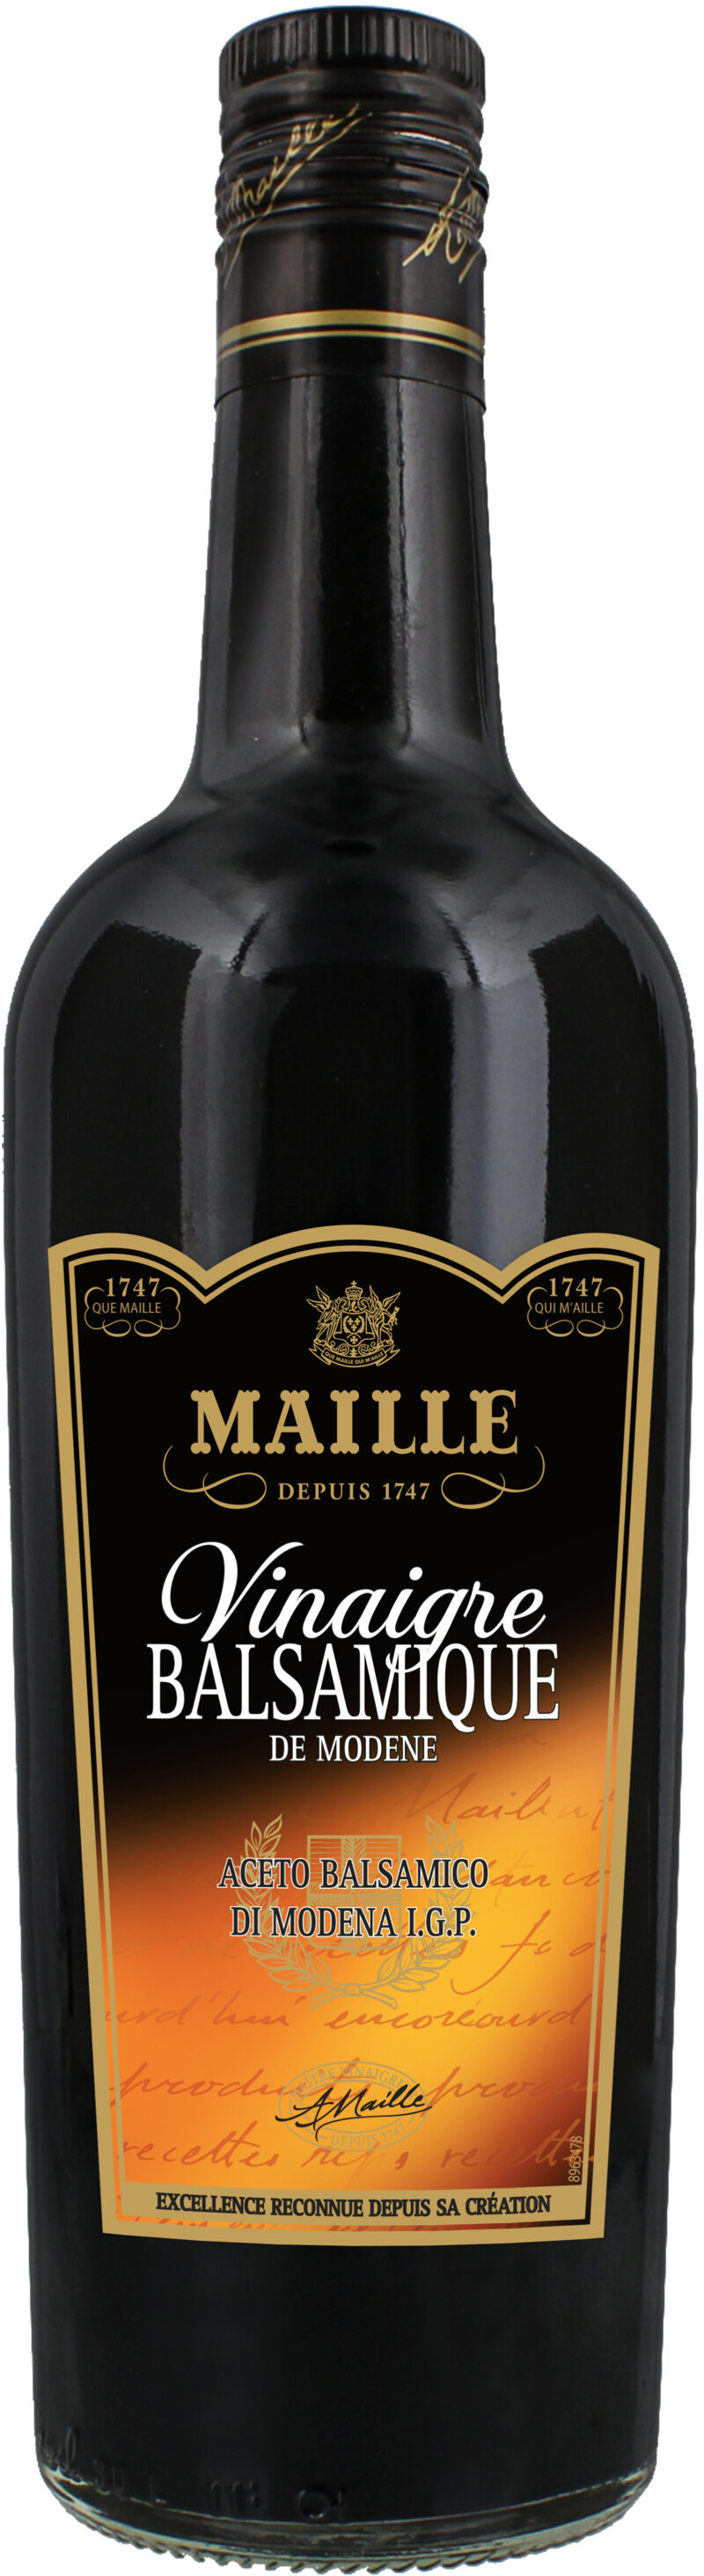 Maille Vinaigre Balsamique de Modène 75 cl - Producto - fr